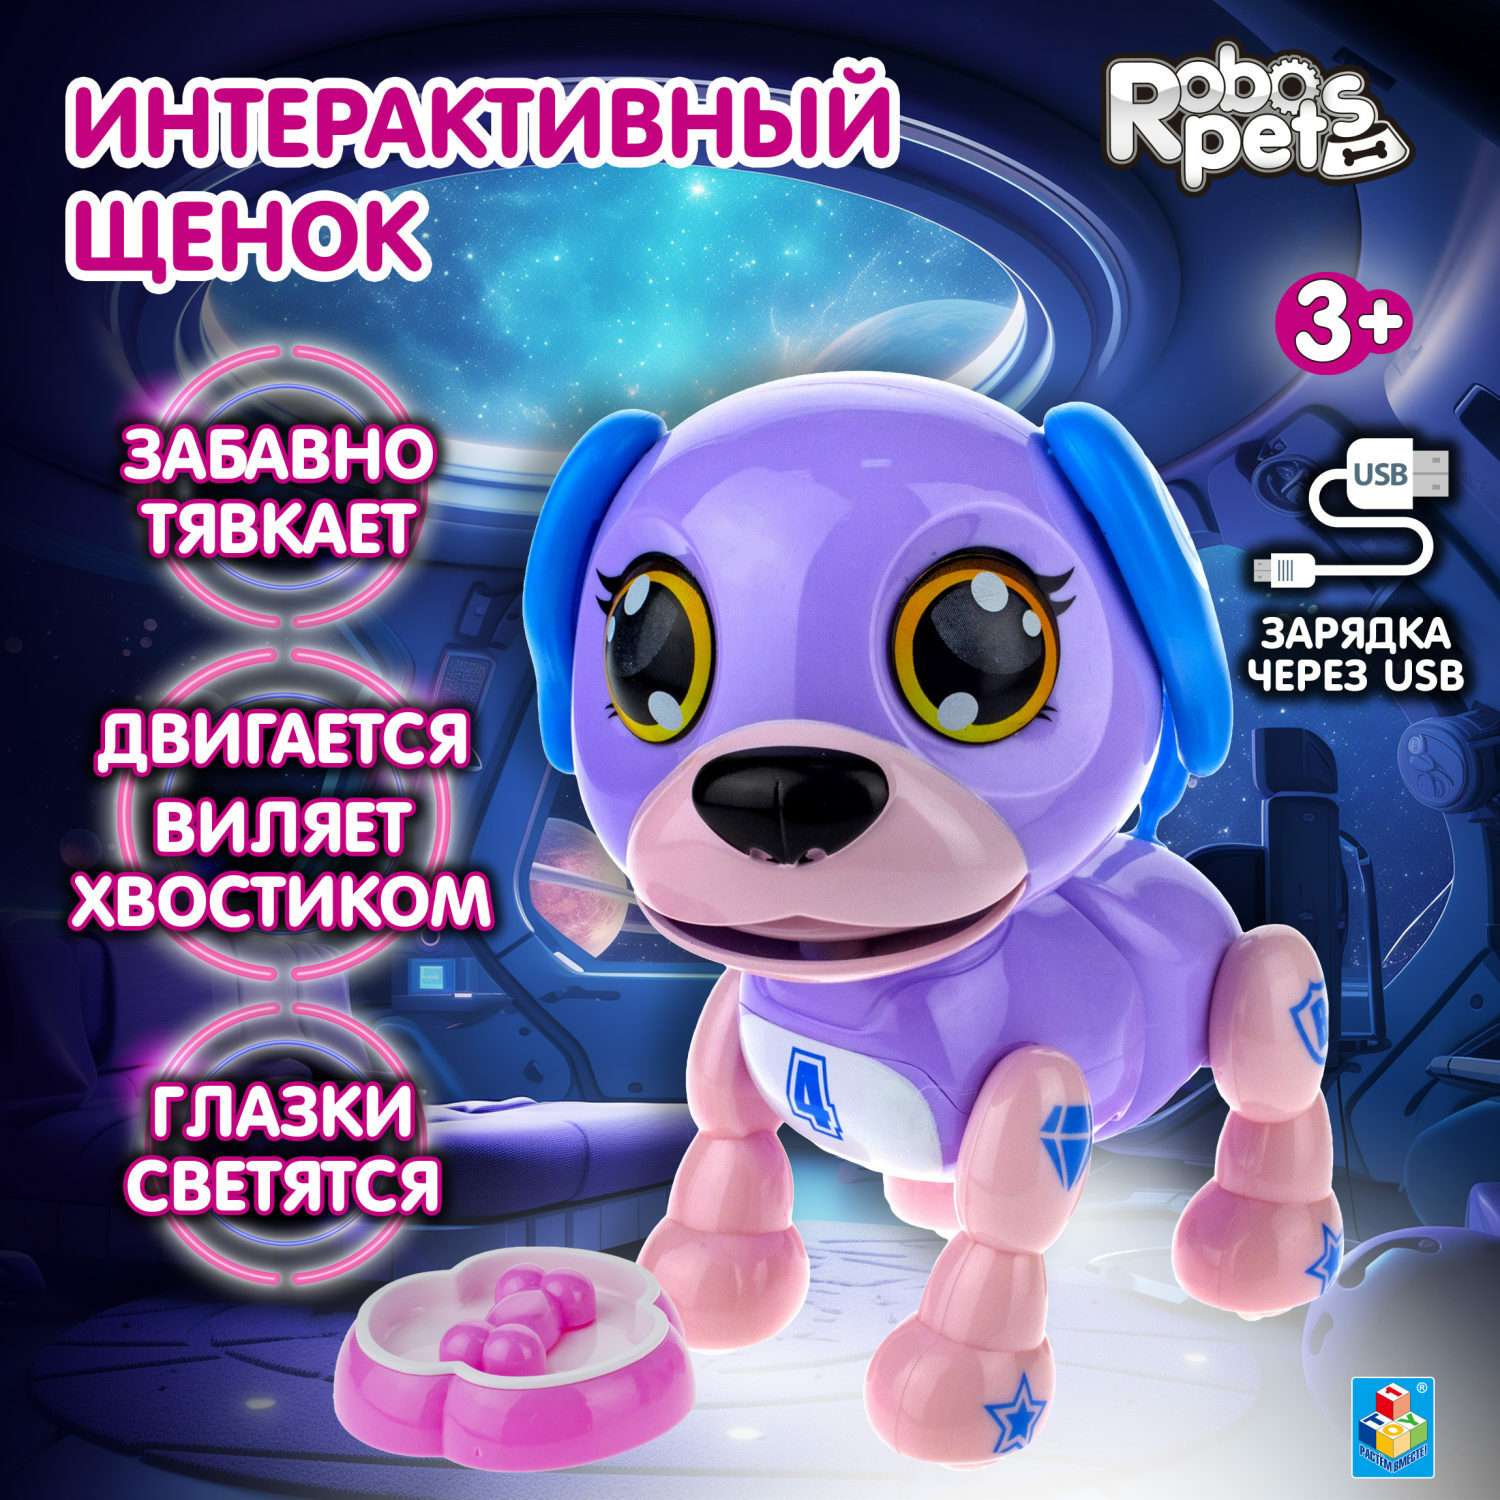 Интерактивная игрушка Robo Pets робо-щенок светло-фиолетовый - фото 1